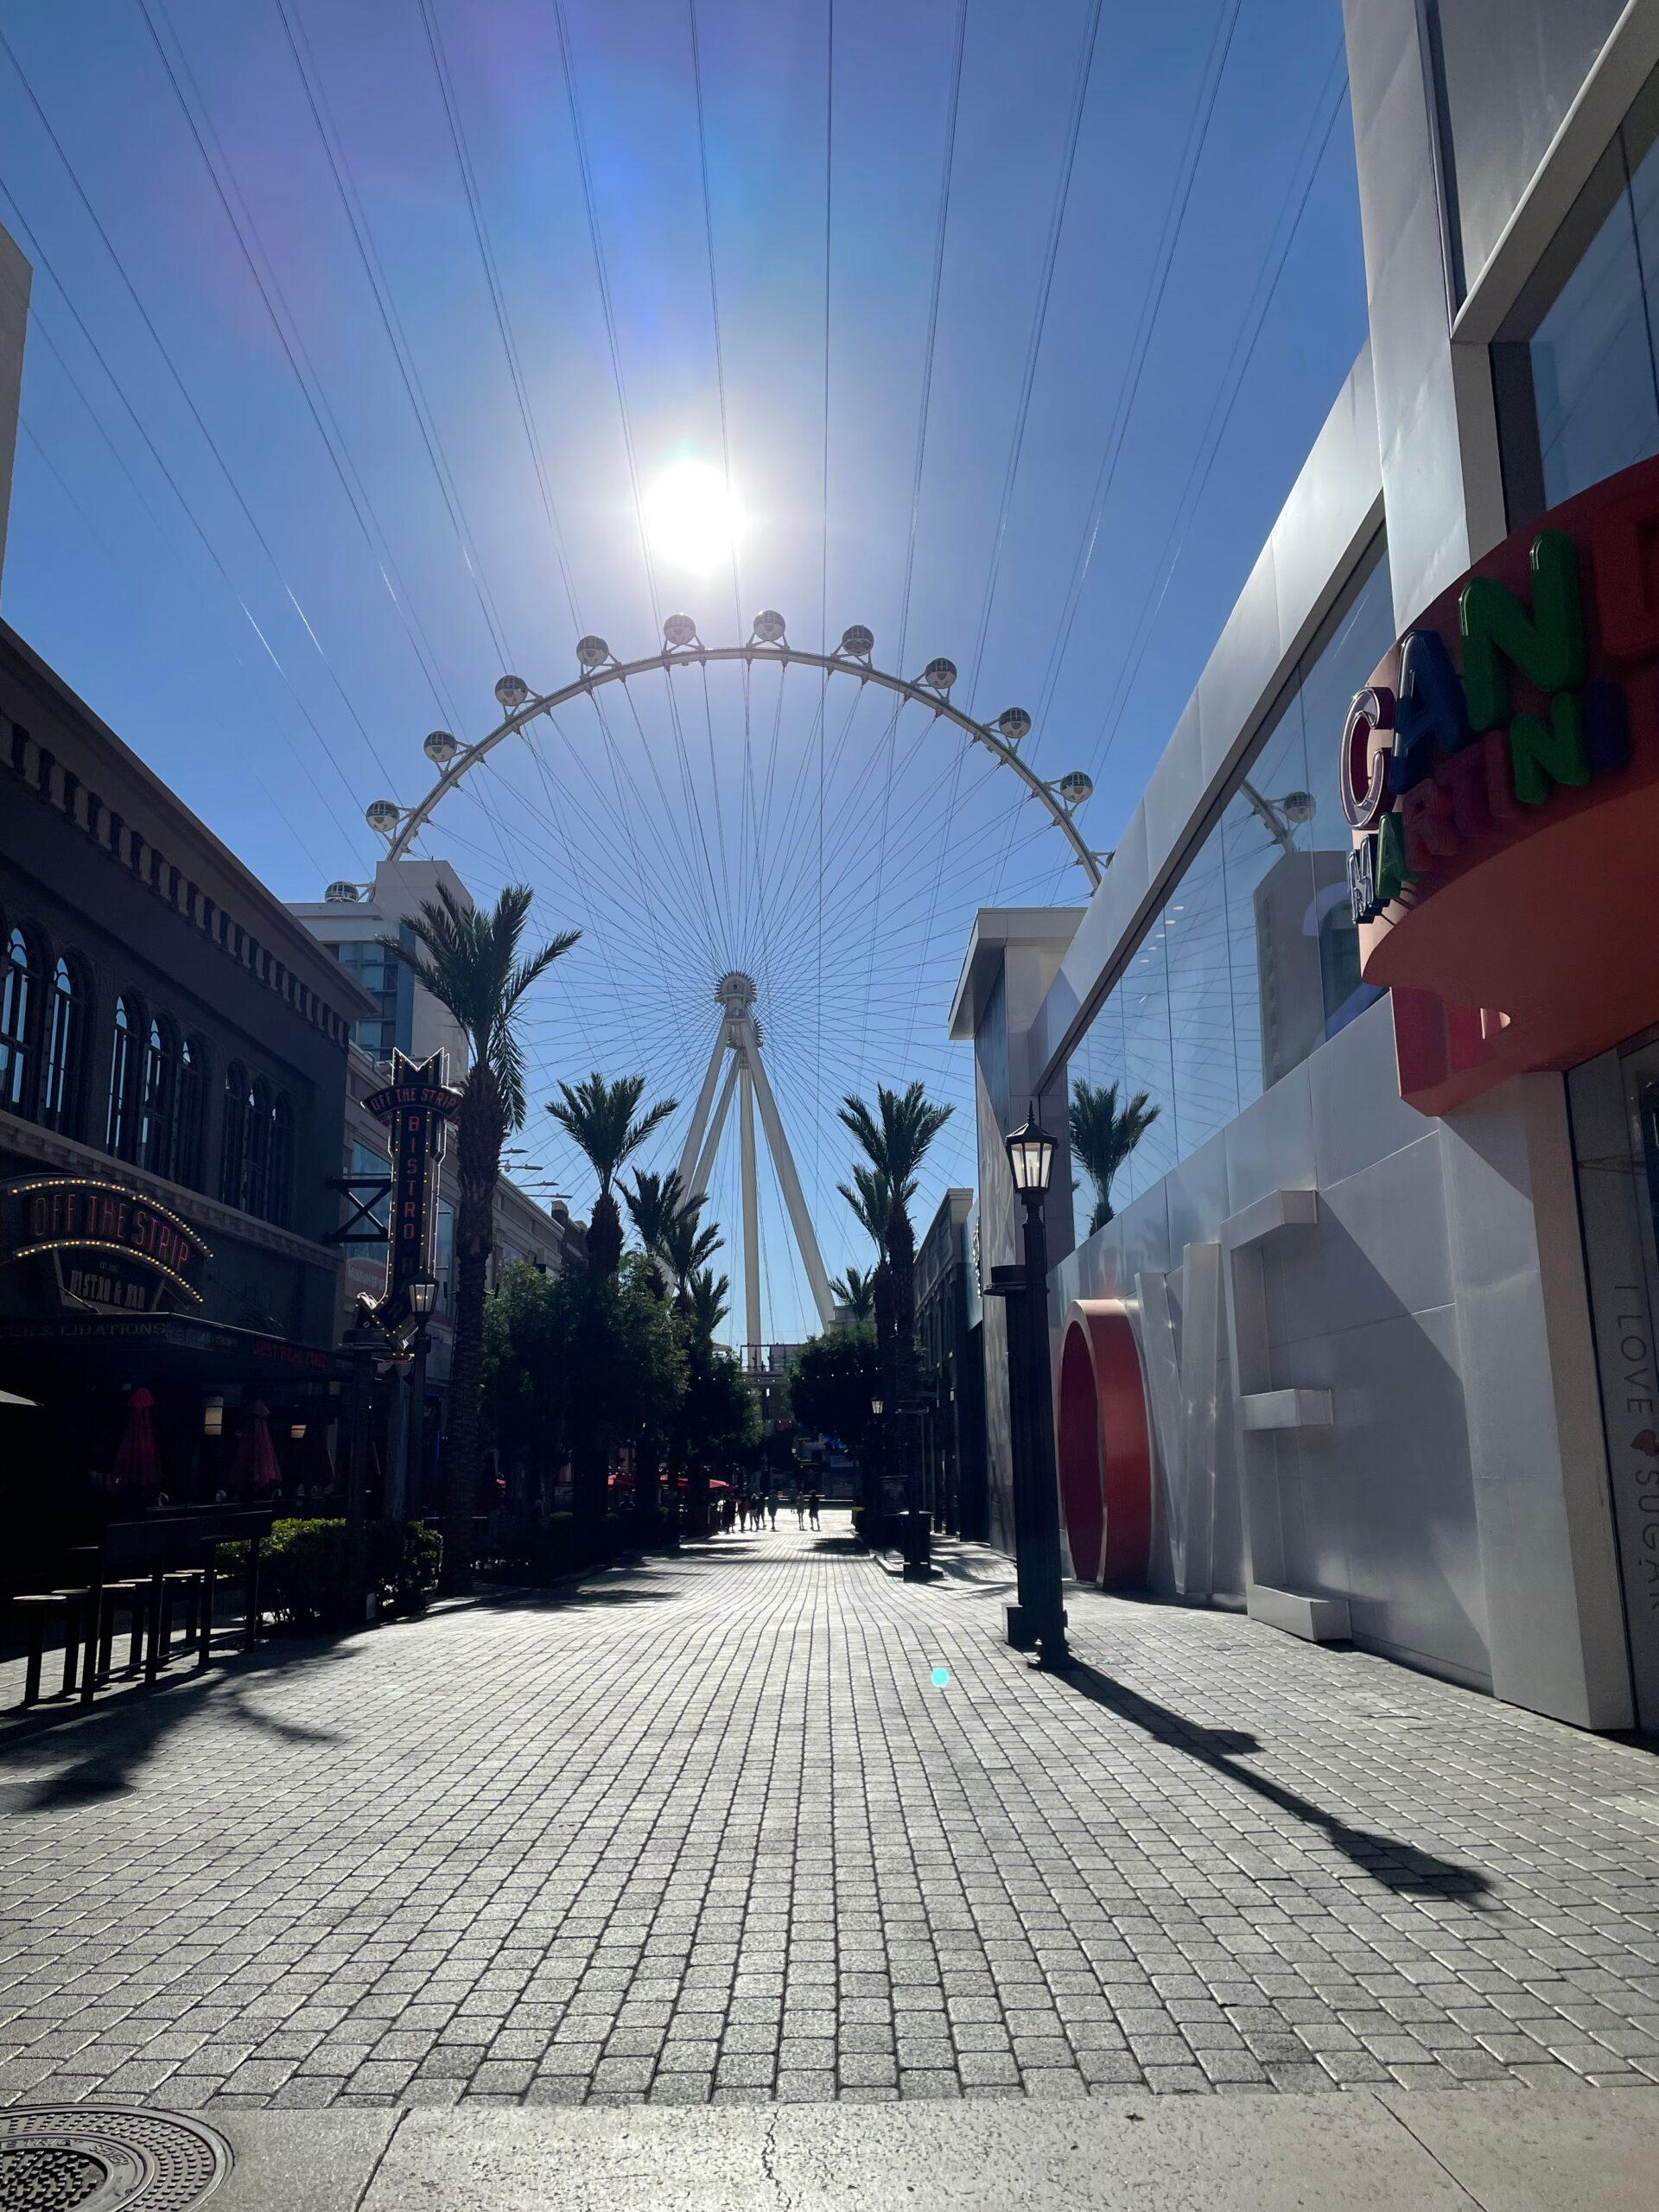 The Linq Promenade in Las Vegas